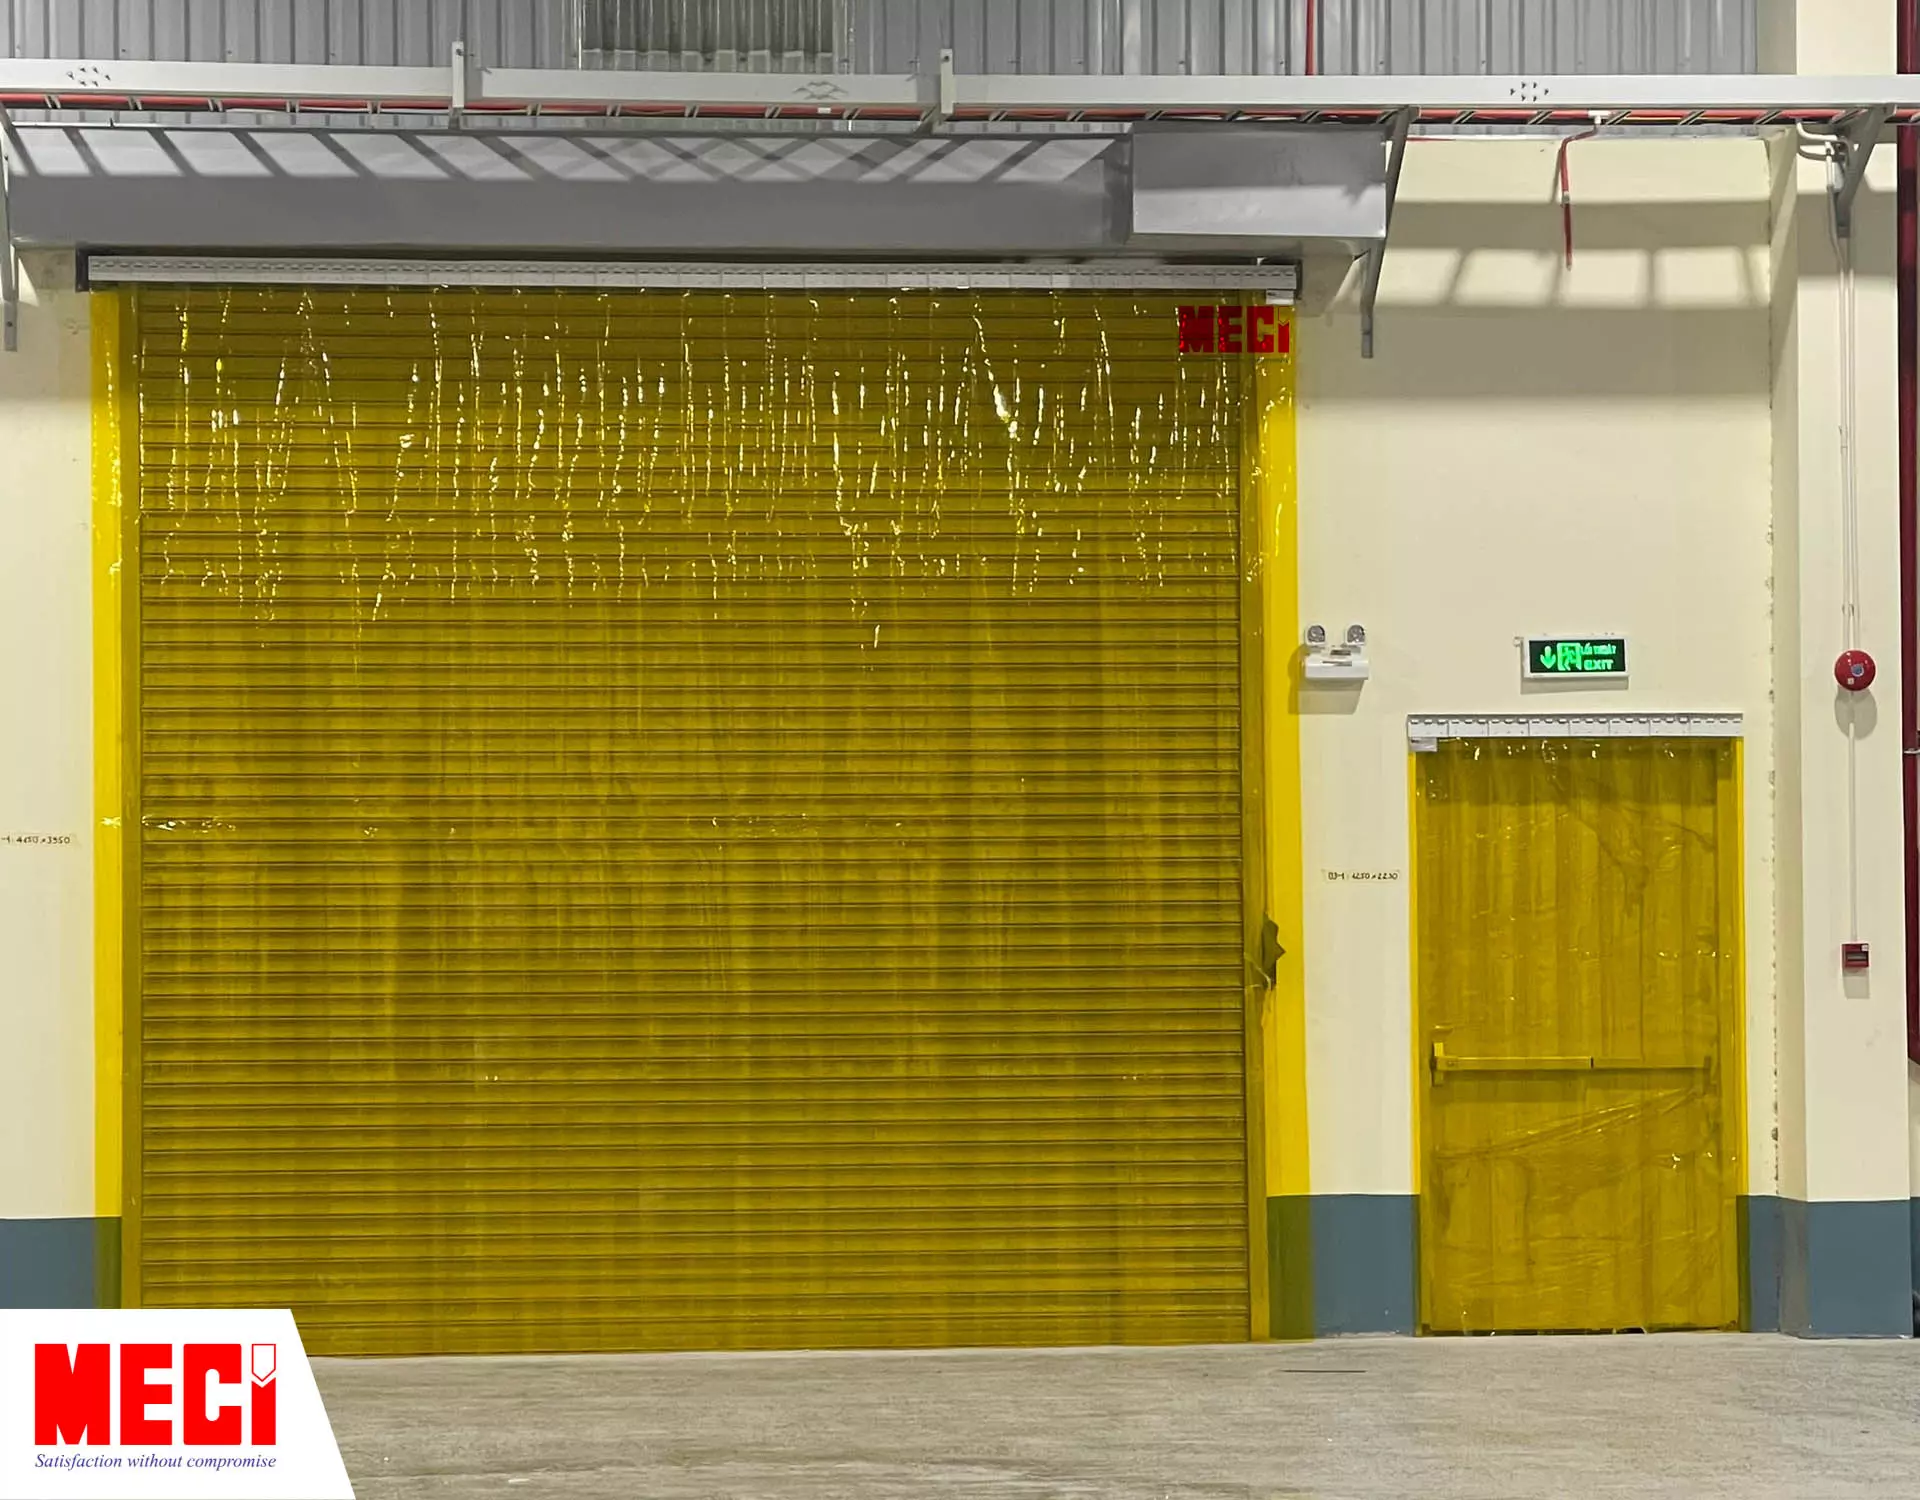  Rèm nhựa PVC màu vàng hệ kéo lùa lắp tại cửa ra vào nhà máy
